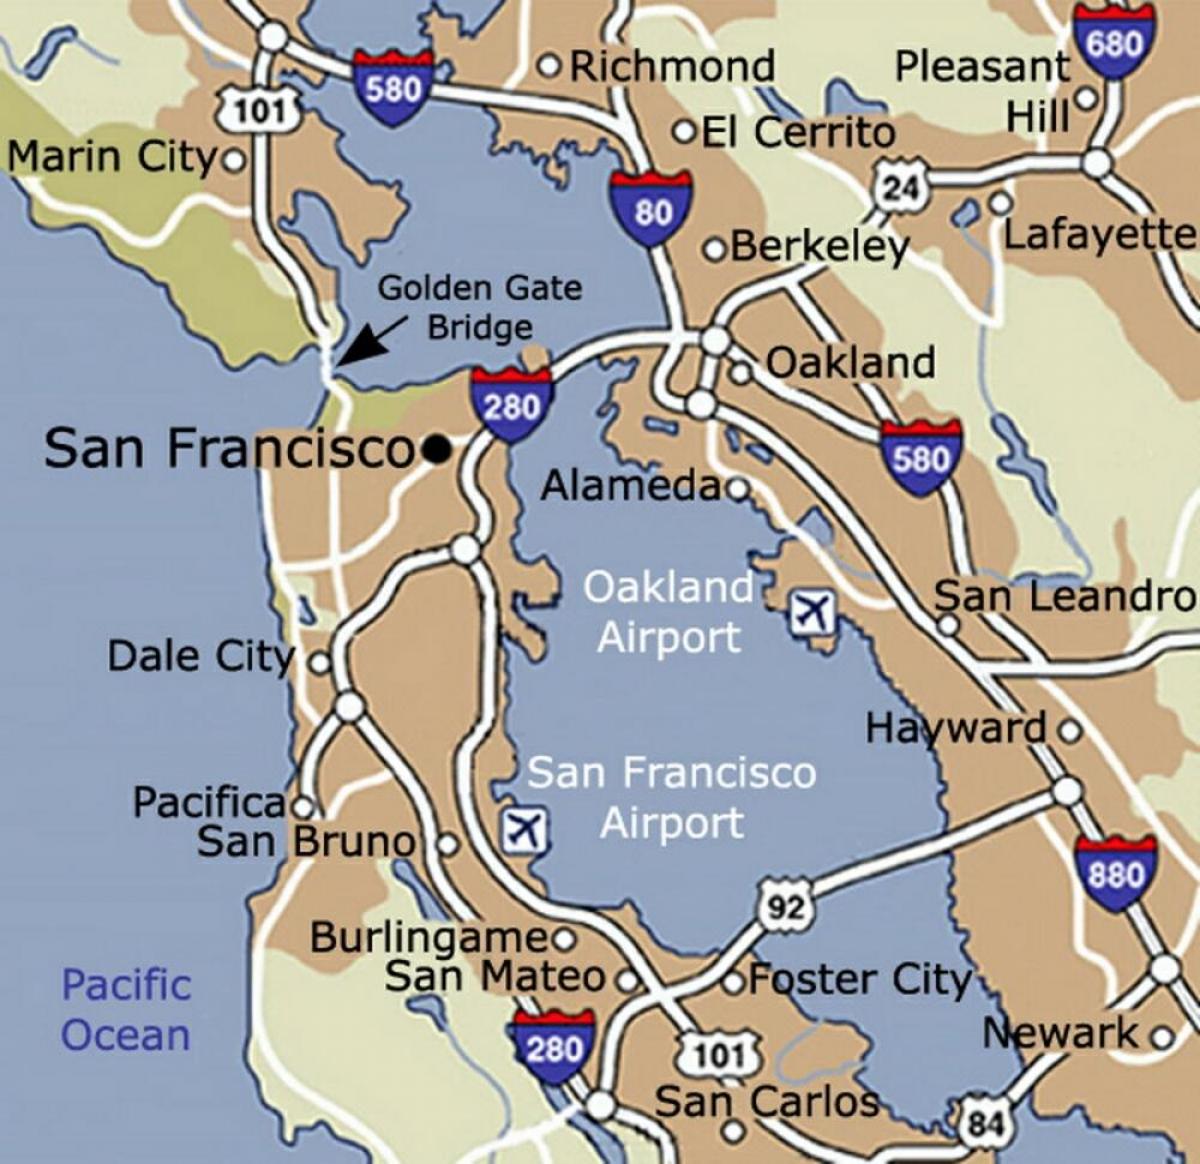 San Francisco havaalanı ve çevresi haritası 